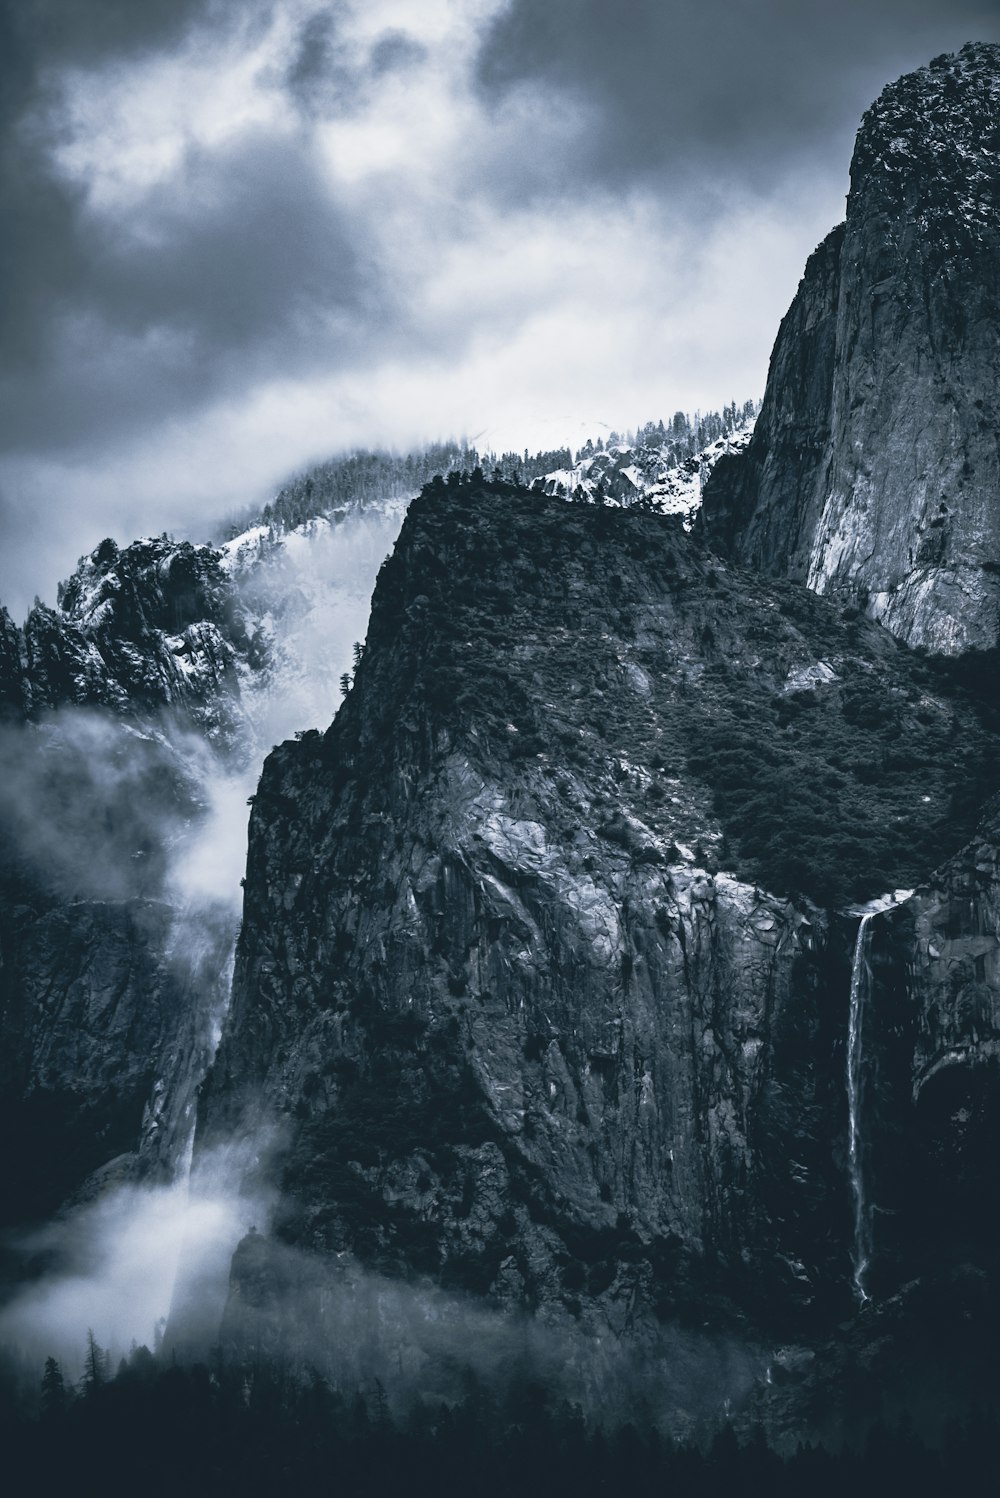 Fotografia in scala di grigi delle Montagne Rocciose